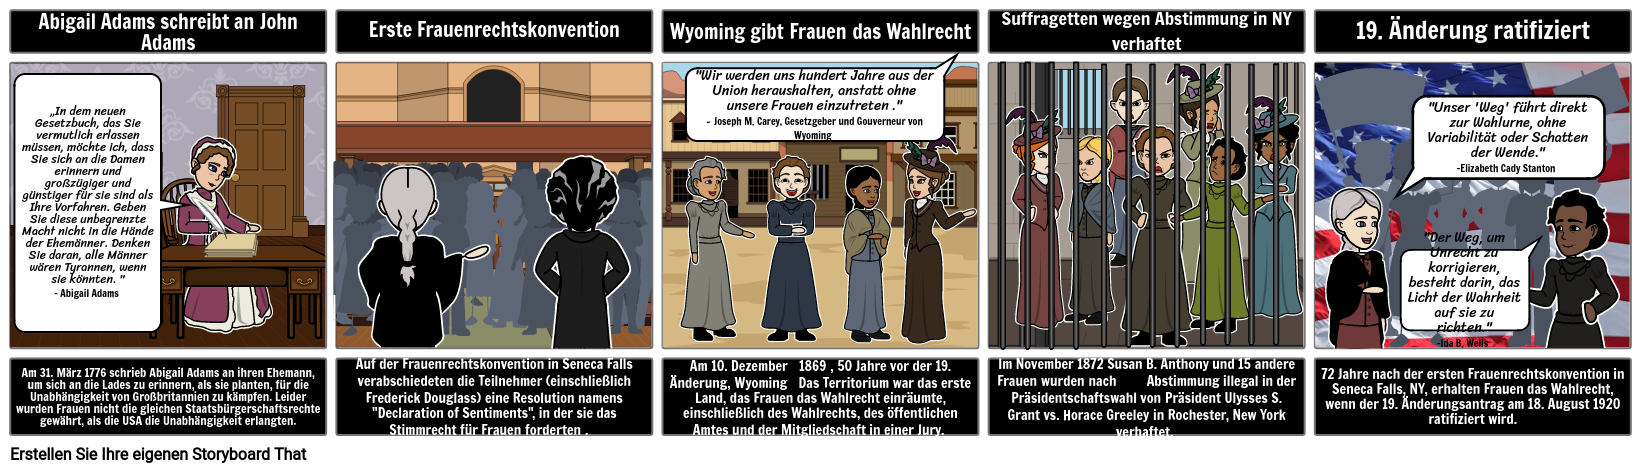 Weg zum 19. Verfassungszusatz - Wahlrecht der Frauen, 4-Zellen-Storyboard